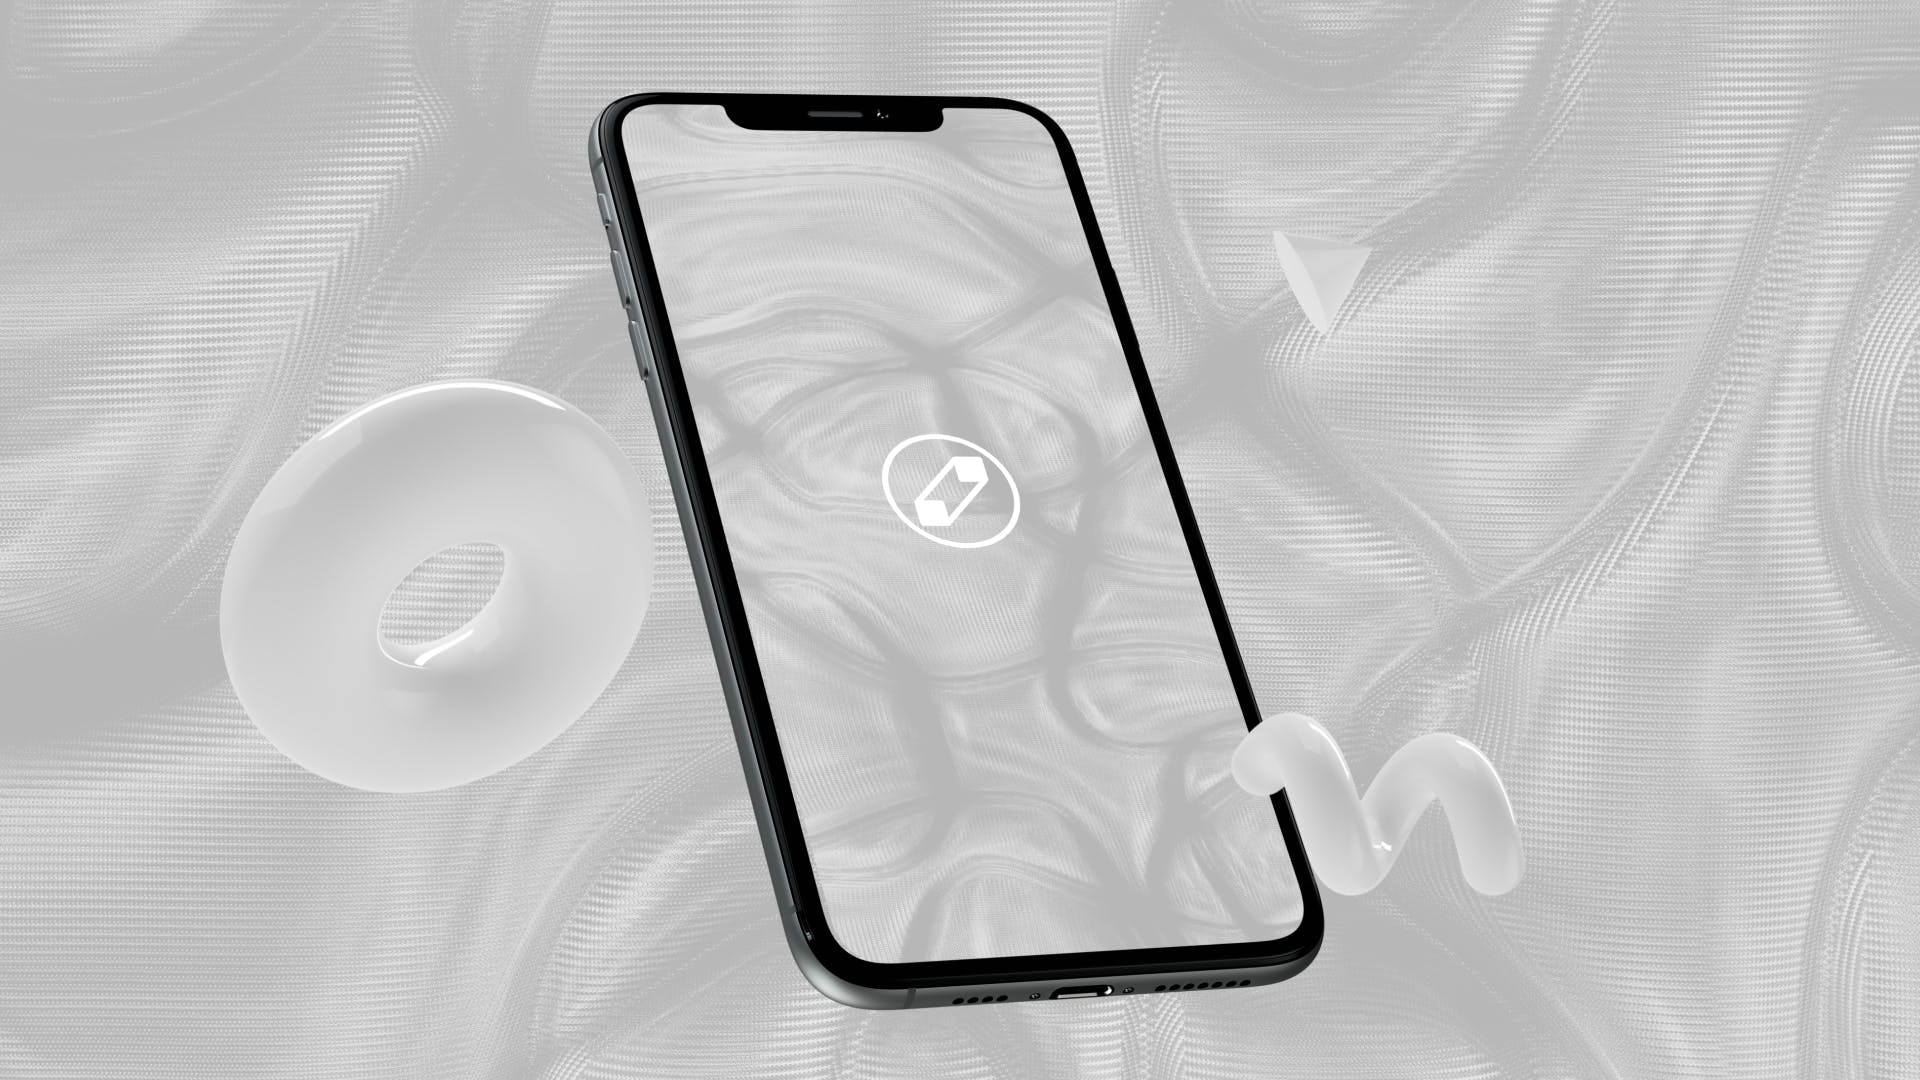 优雅时尚风格3D立体风格iPhone手机屏幕预览素材中国精选样机 10 Light Phone Mockups插图(5)